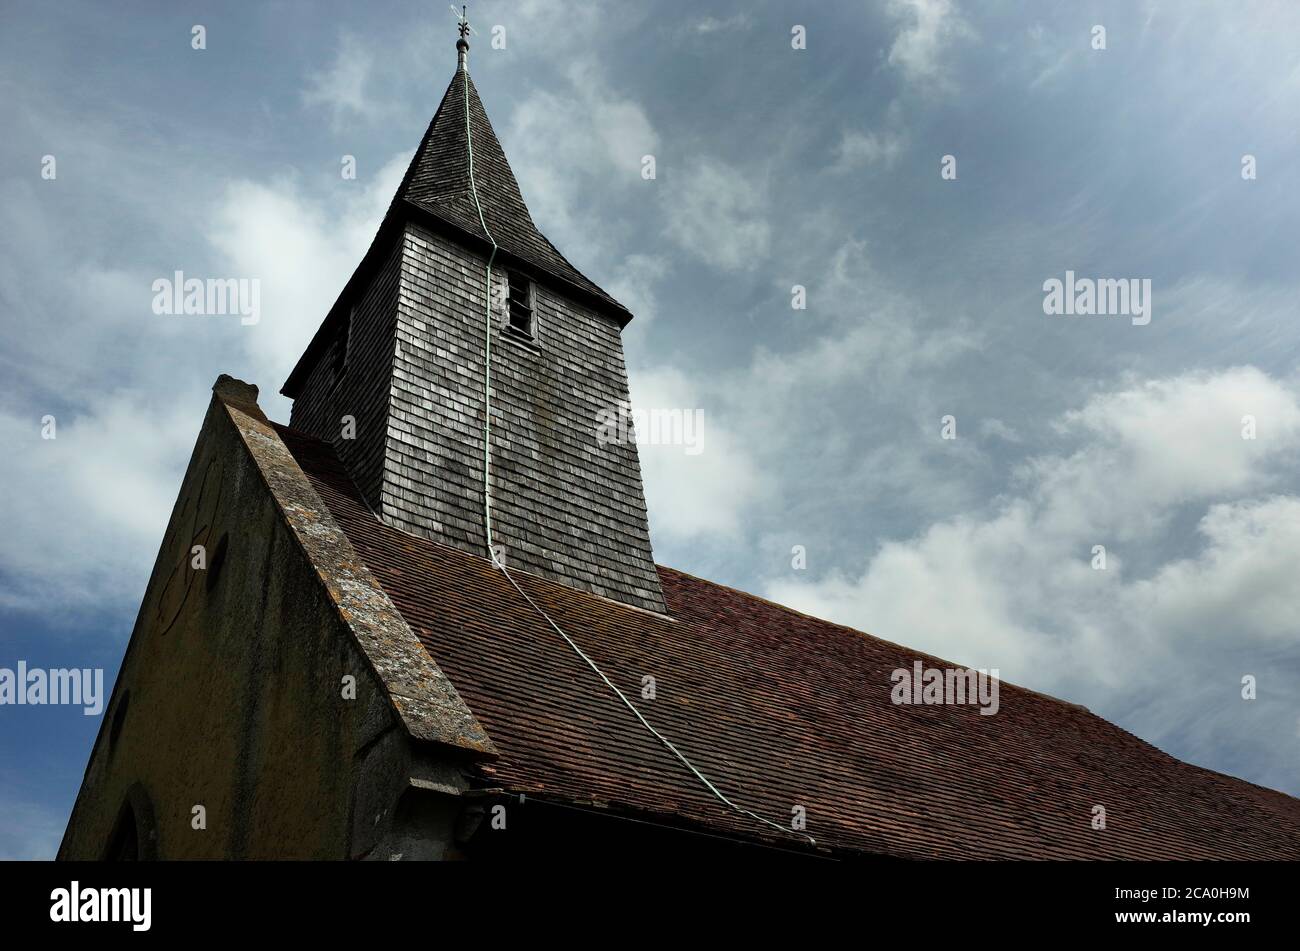 Tour et toit de l'église de la Sainte Croix Hoath Kent Angleterre Banque D'Images